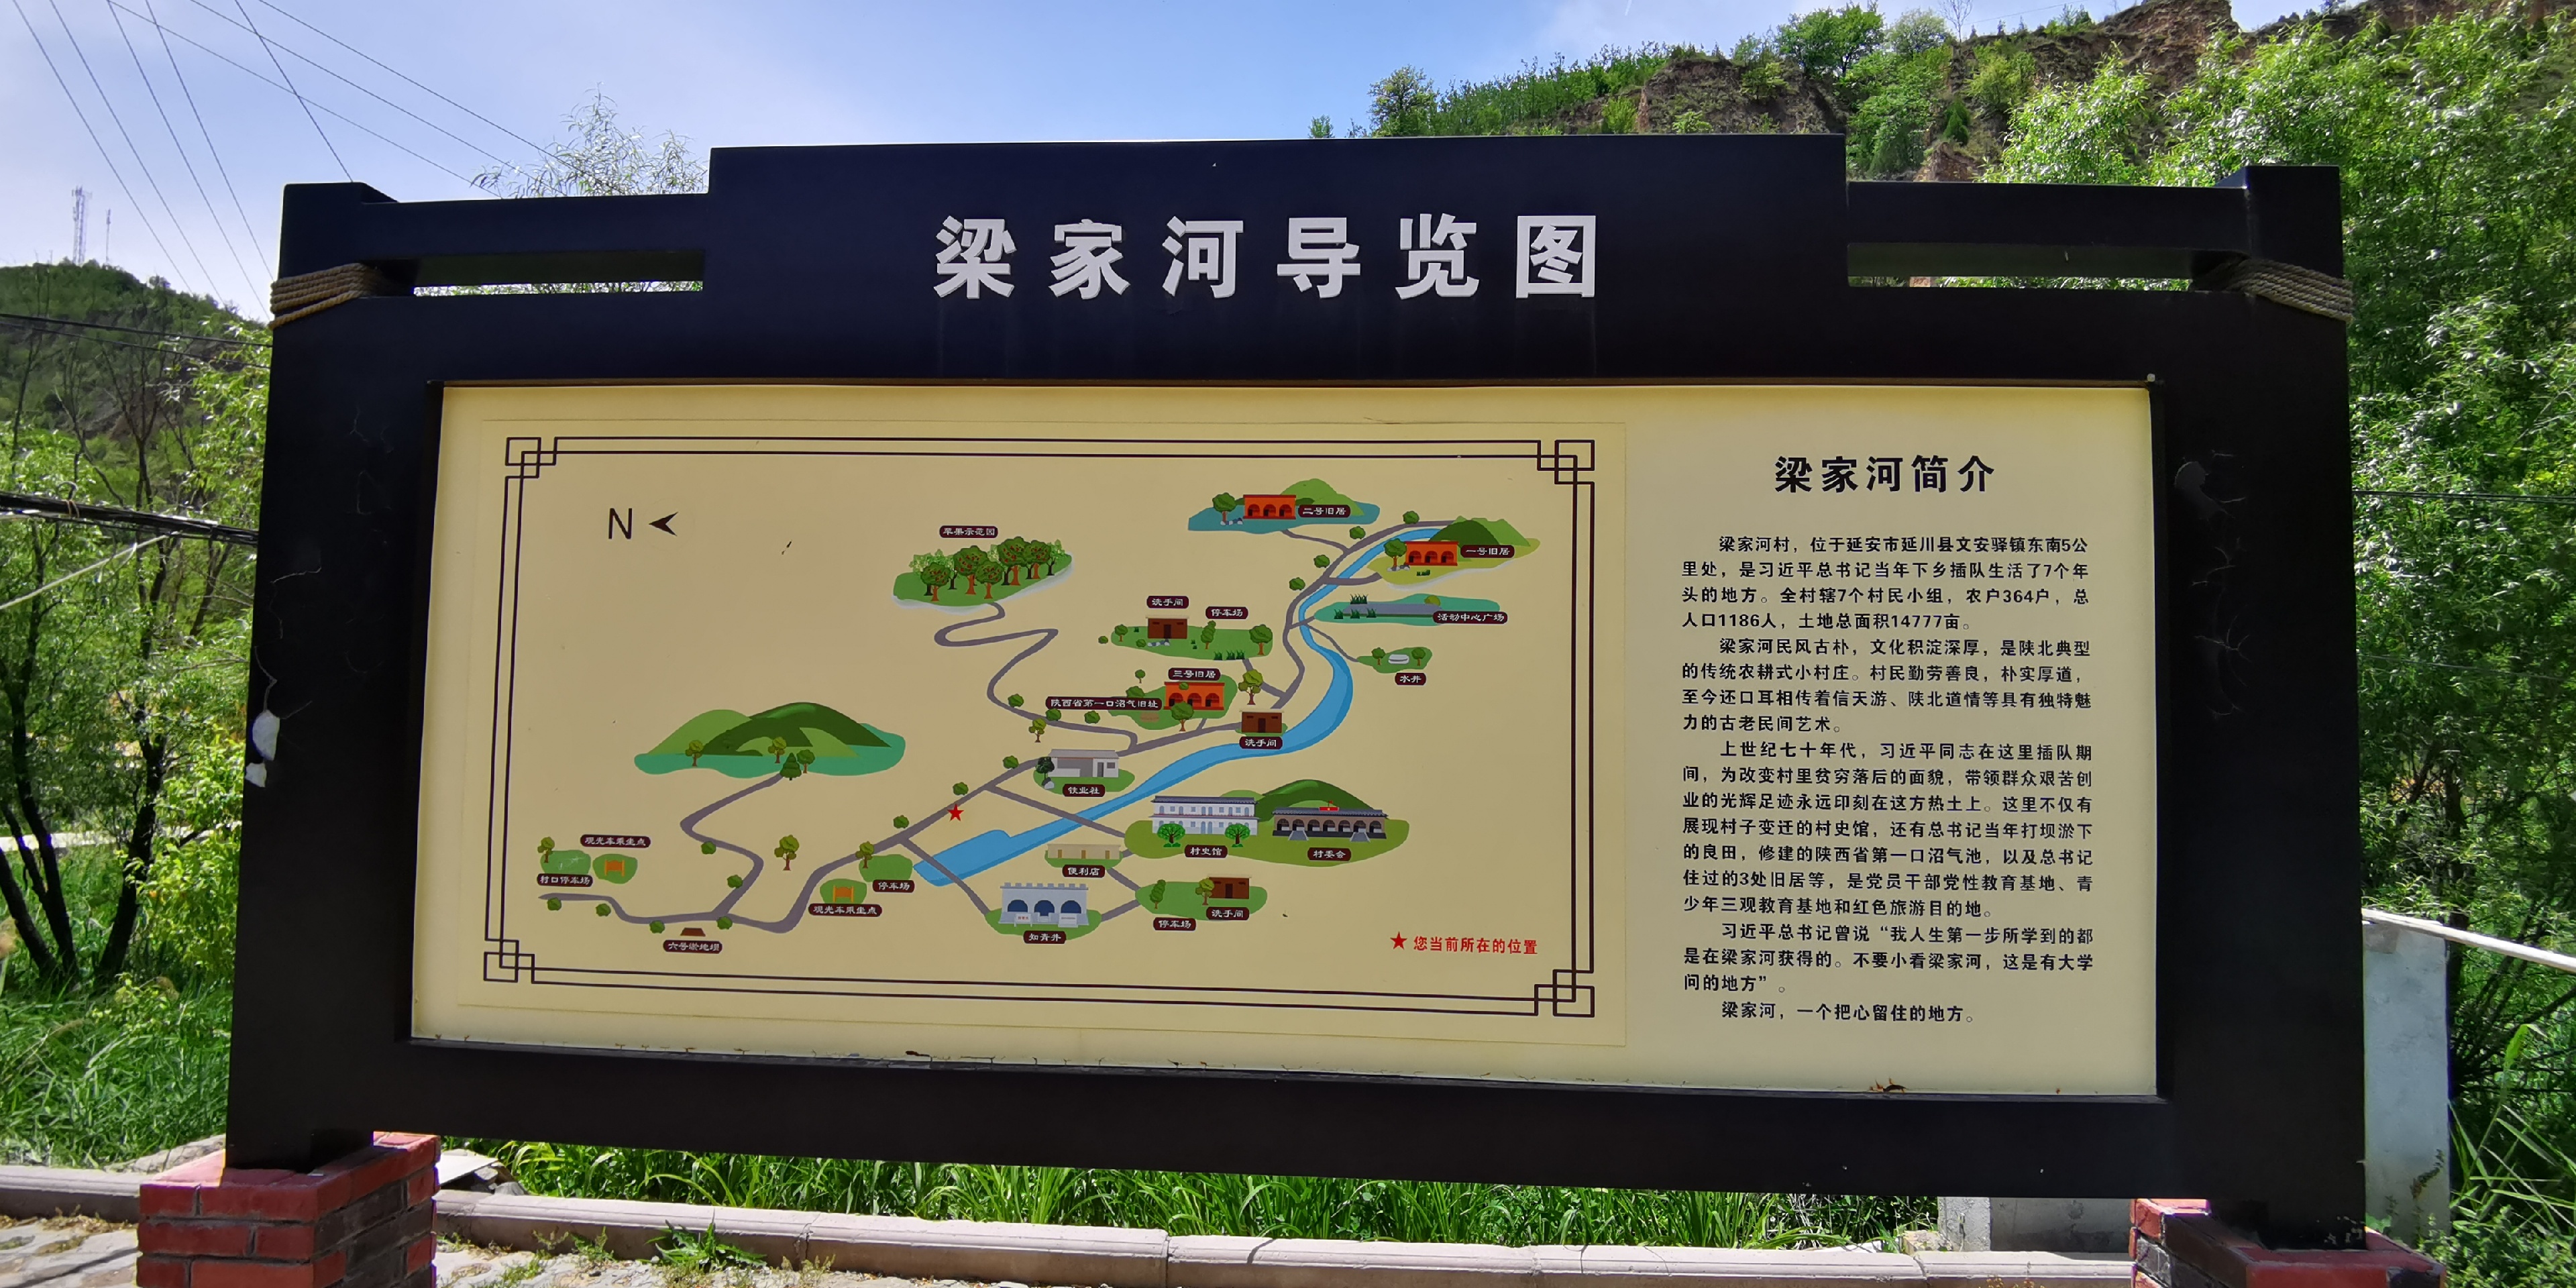 梁家河村新农村建设试点村之一，被列入第五批中国传统村落名录